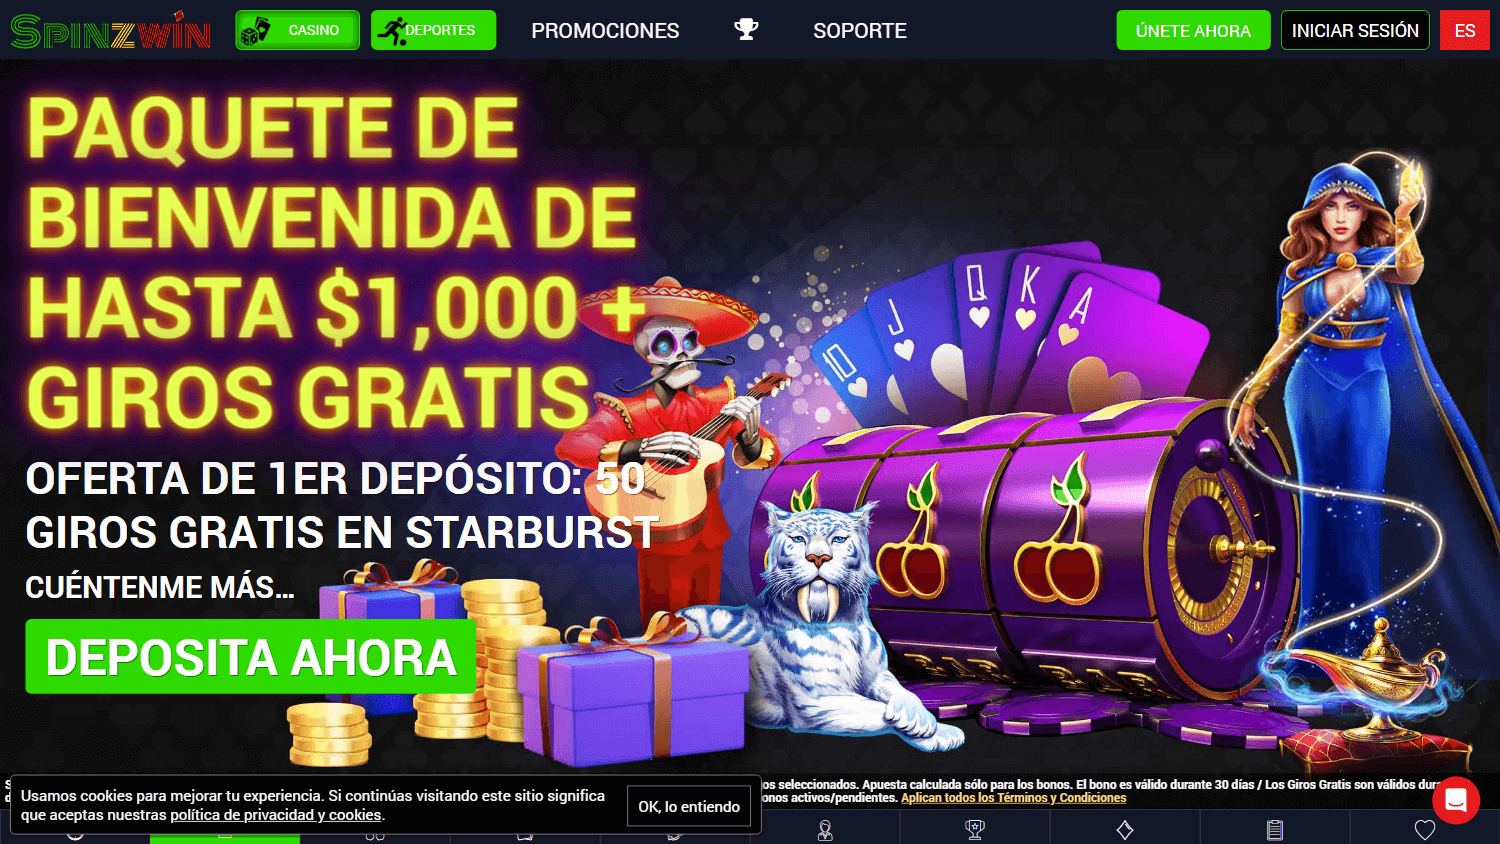 spinzwin_casino_promotions_desktop